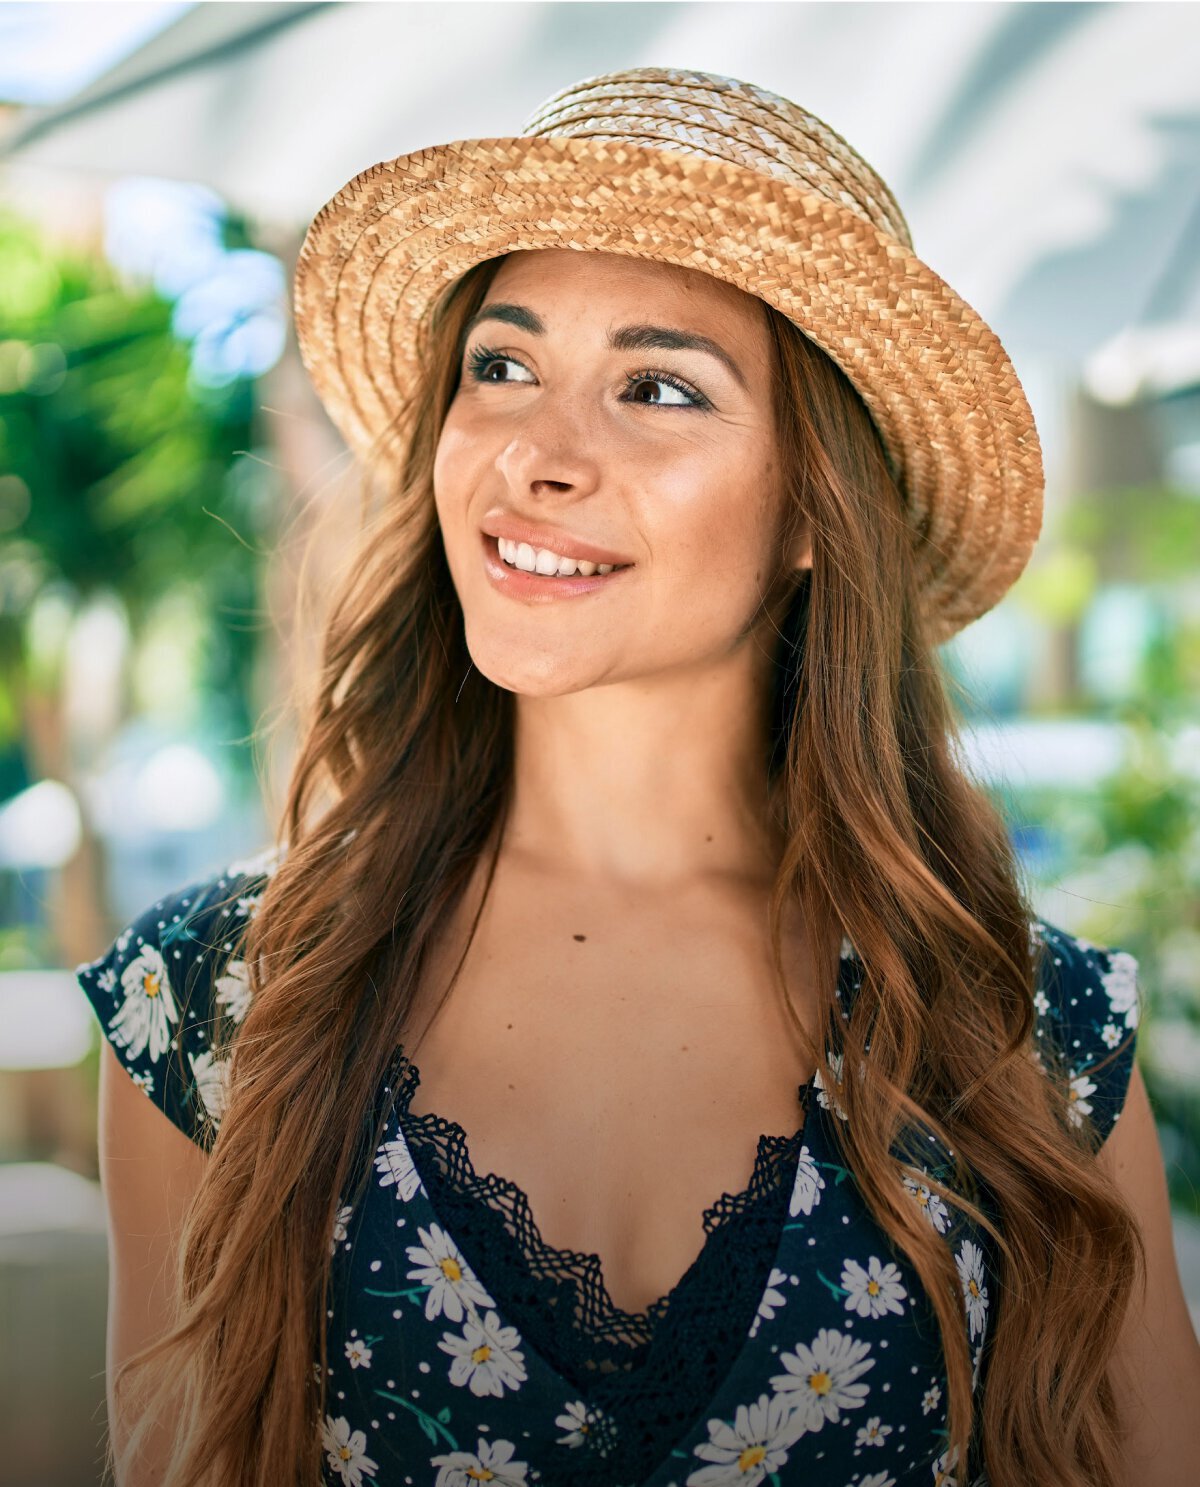 Los Angeles Medspa model wearing hat